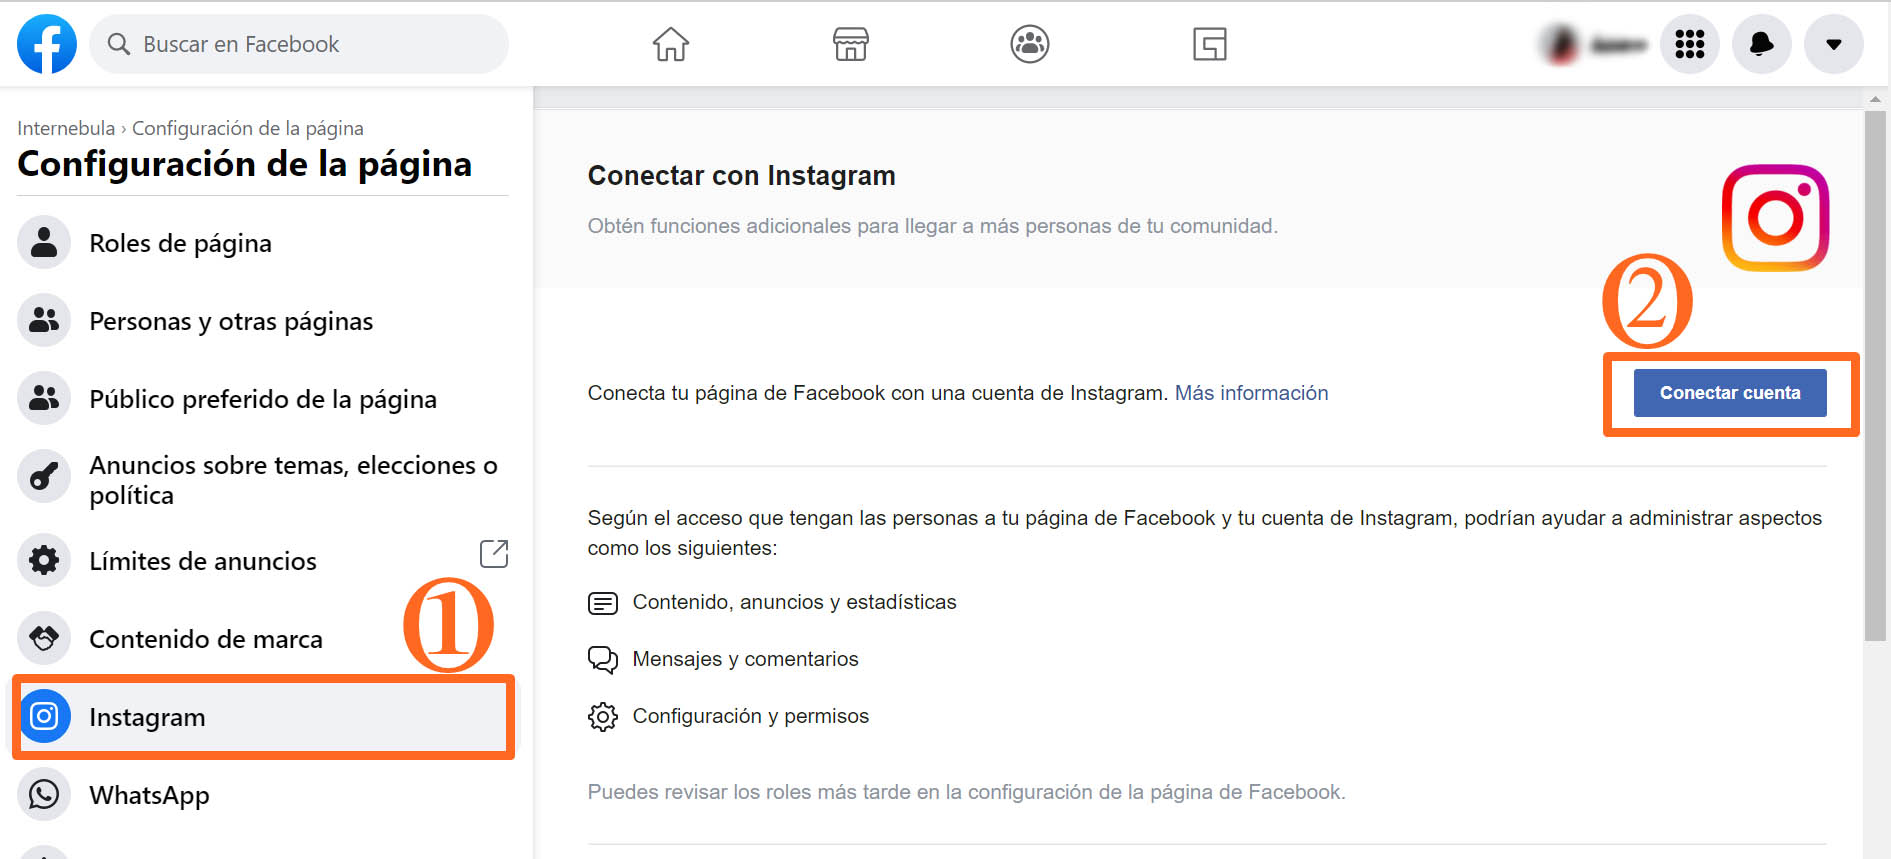 Sincroniza Instagram con Facebook para publicar anuncios 